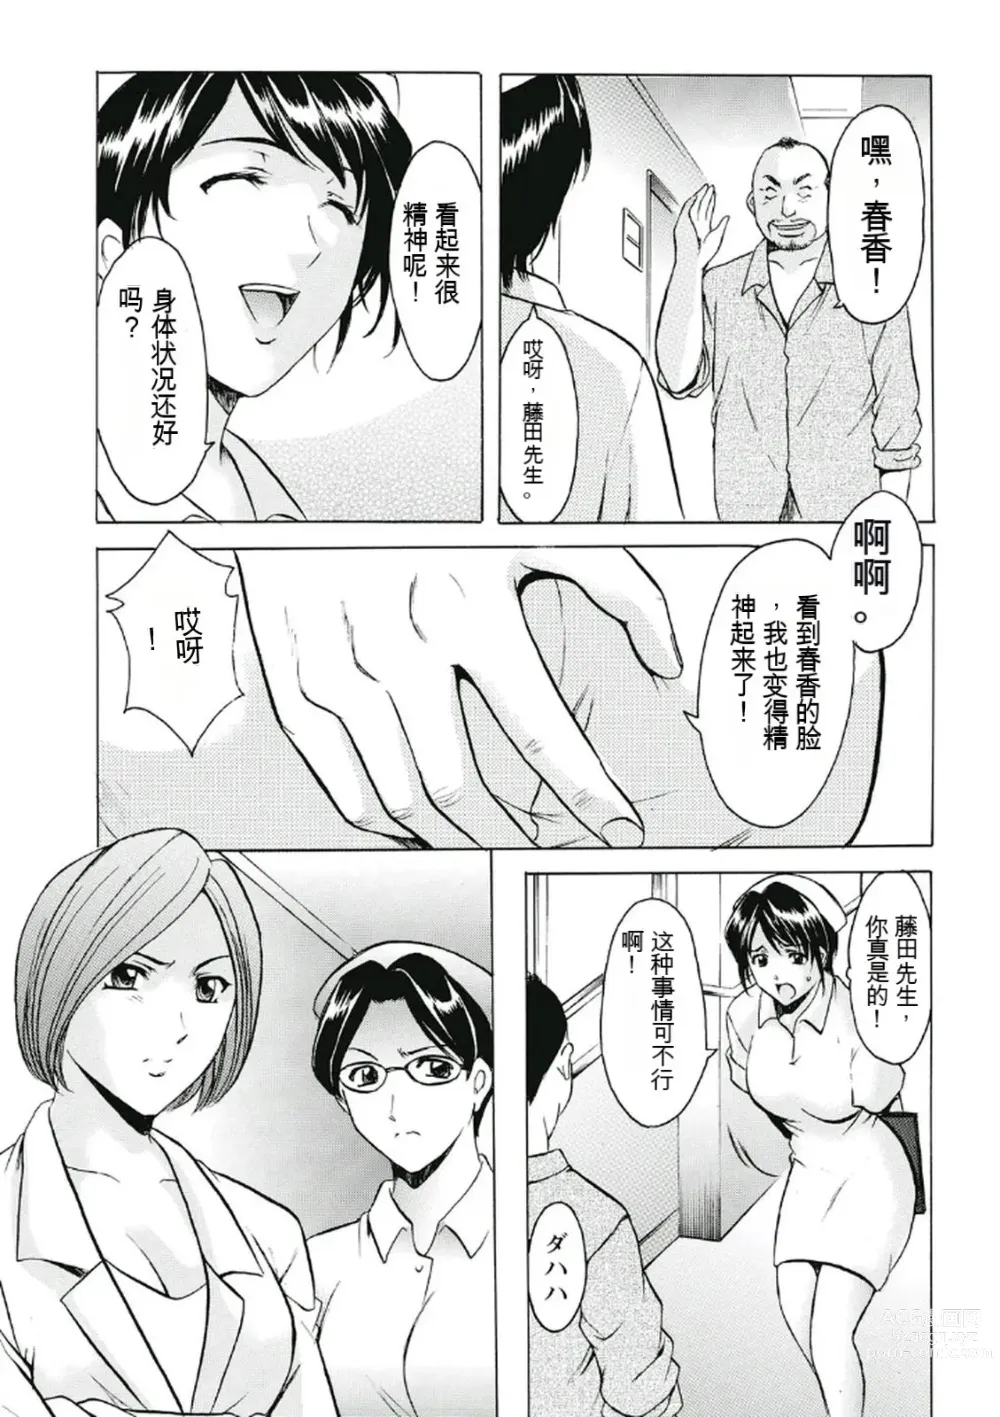 Page 5 of manga Chijoku Byoutou -Hakui no Datenshi-